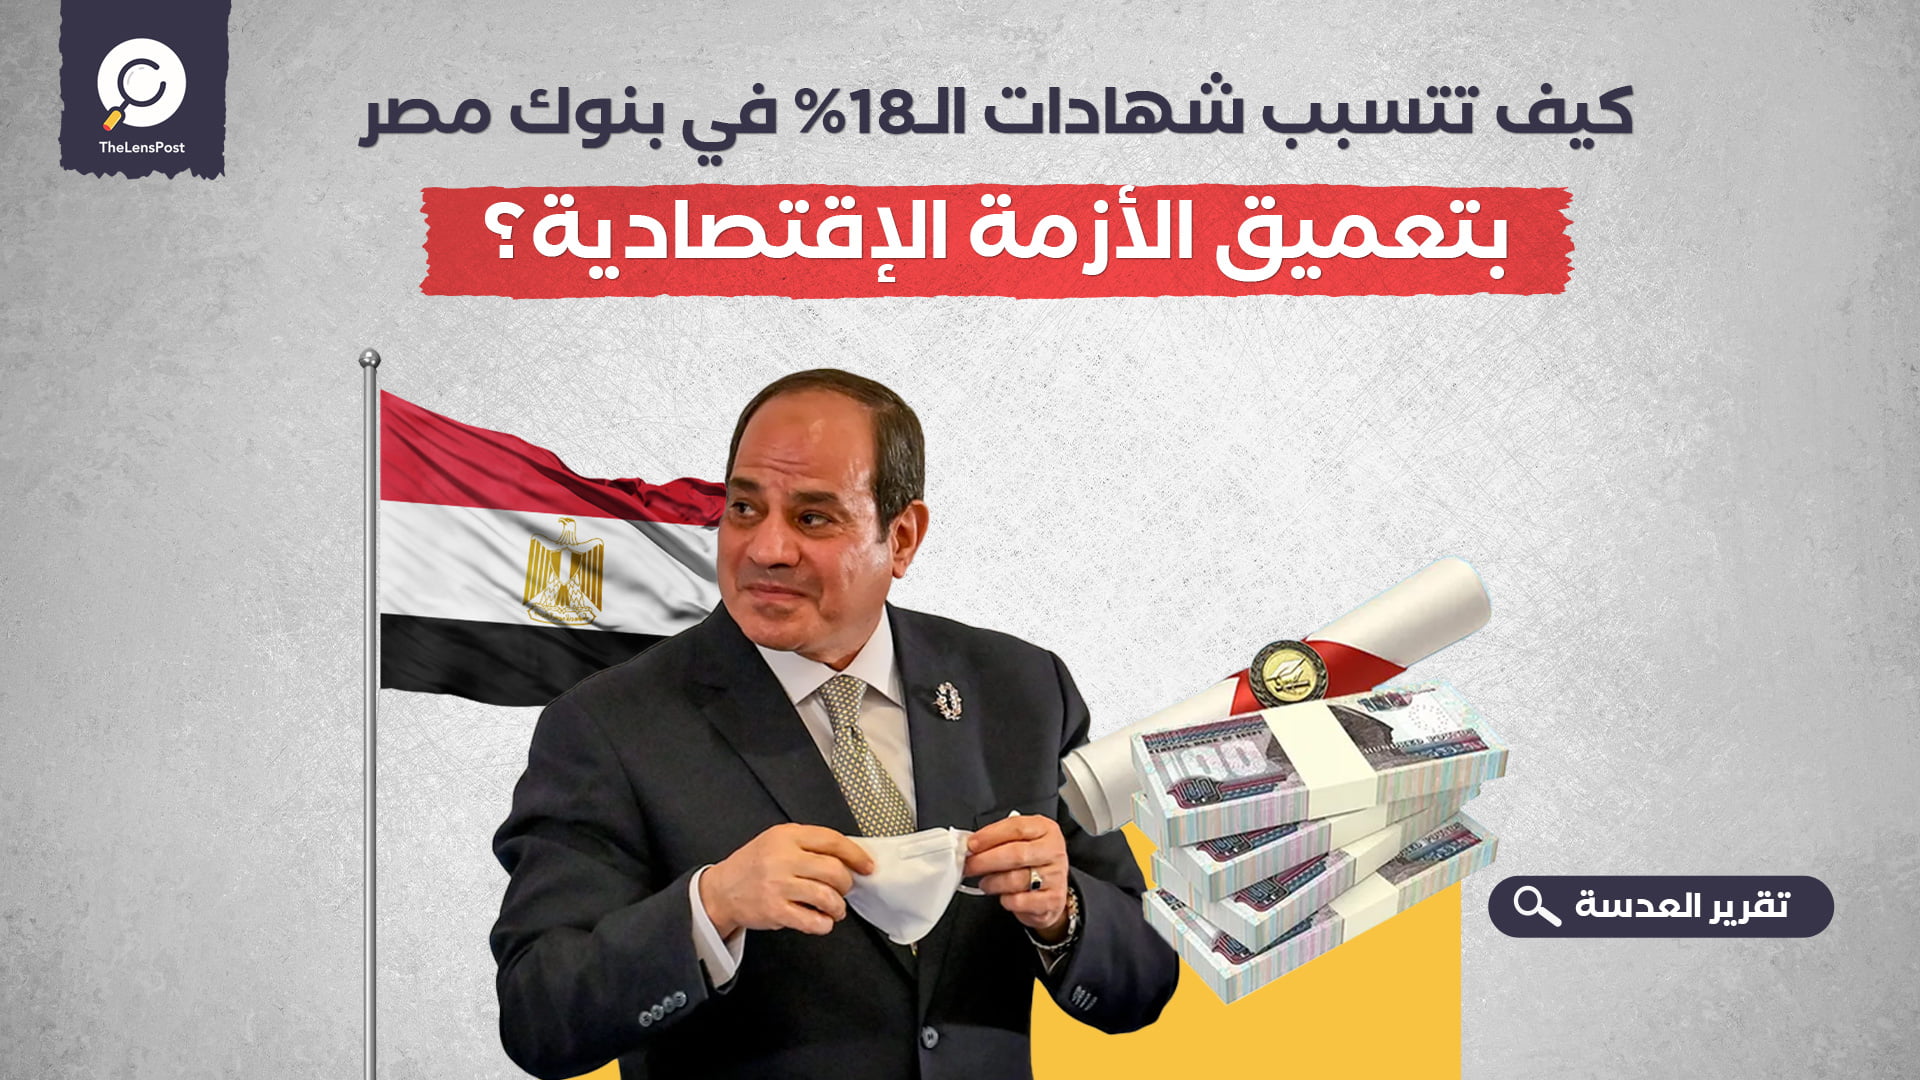 كيف تتسبب شهادات الـ18% في بنوك مصر بتعميق الأزمة الإقتصادية؟